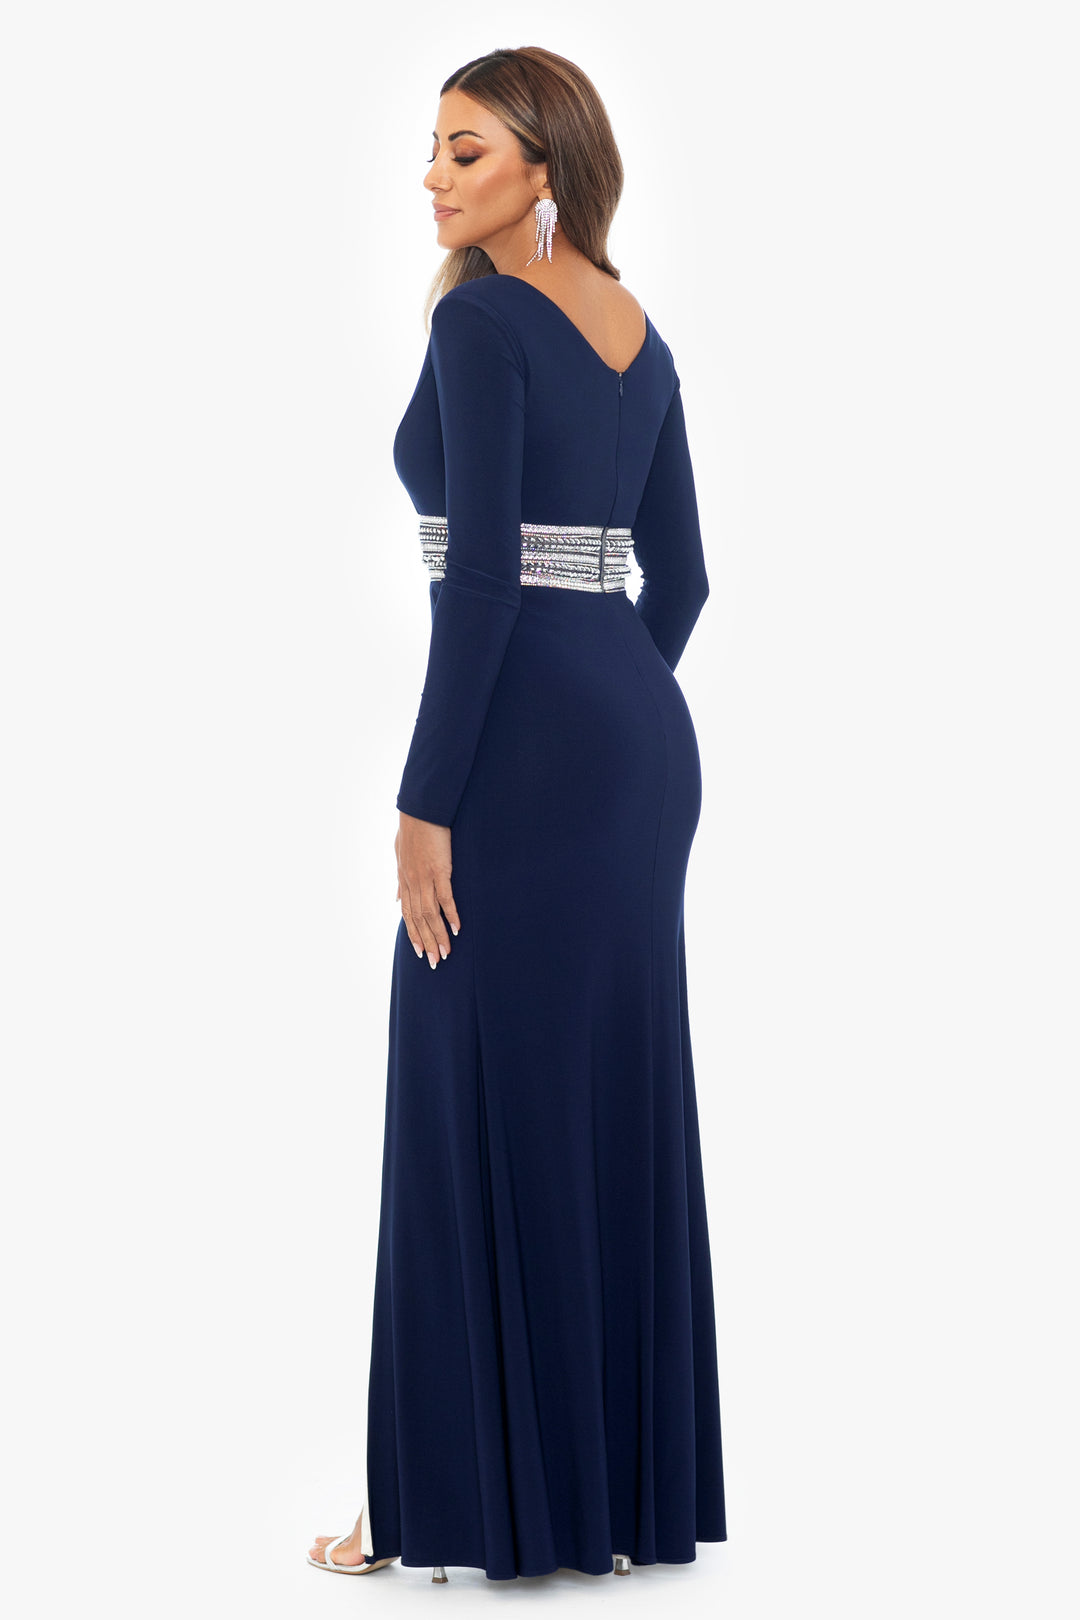 "Twyla" Long V-Neck Jersey Knit Beaded Waist Dress